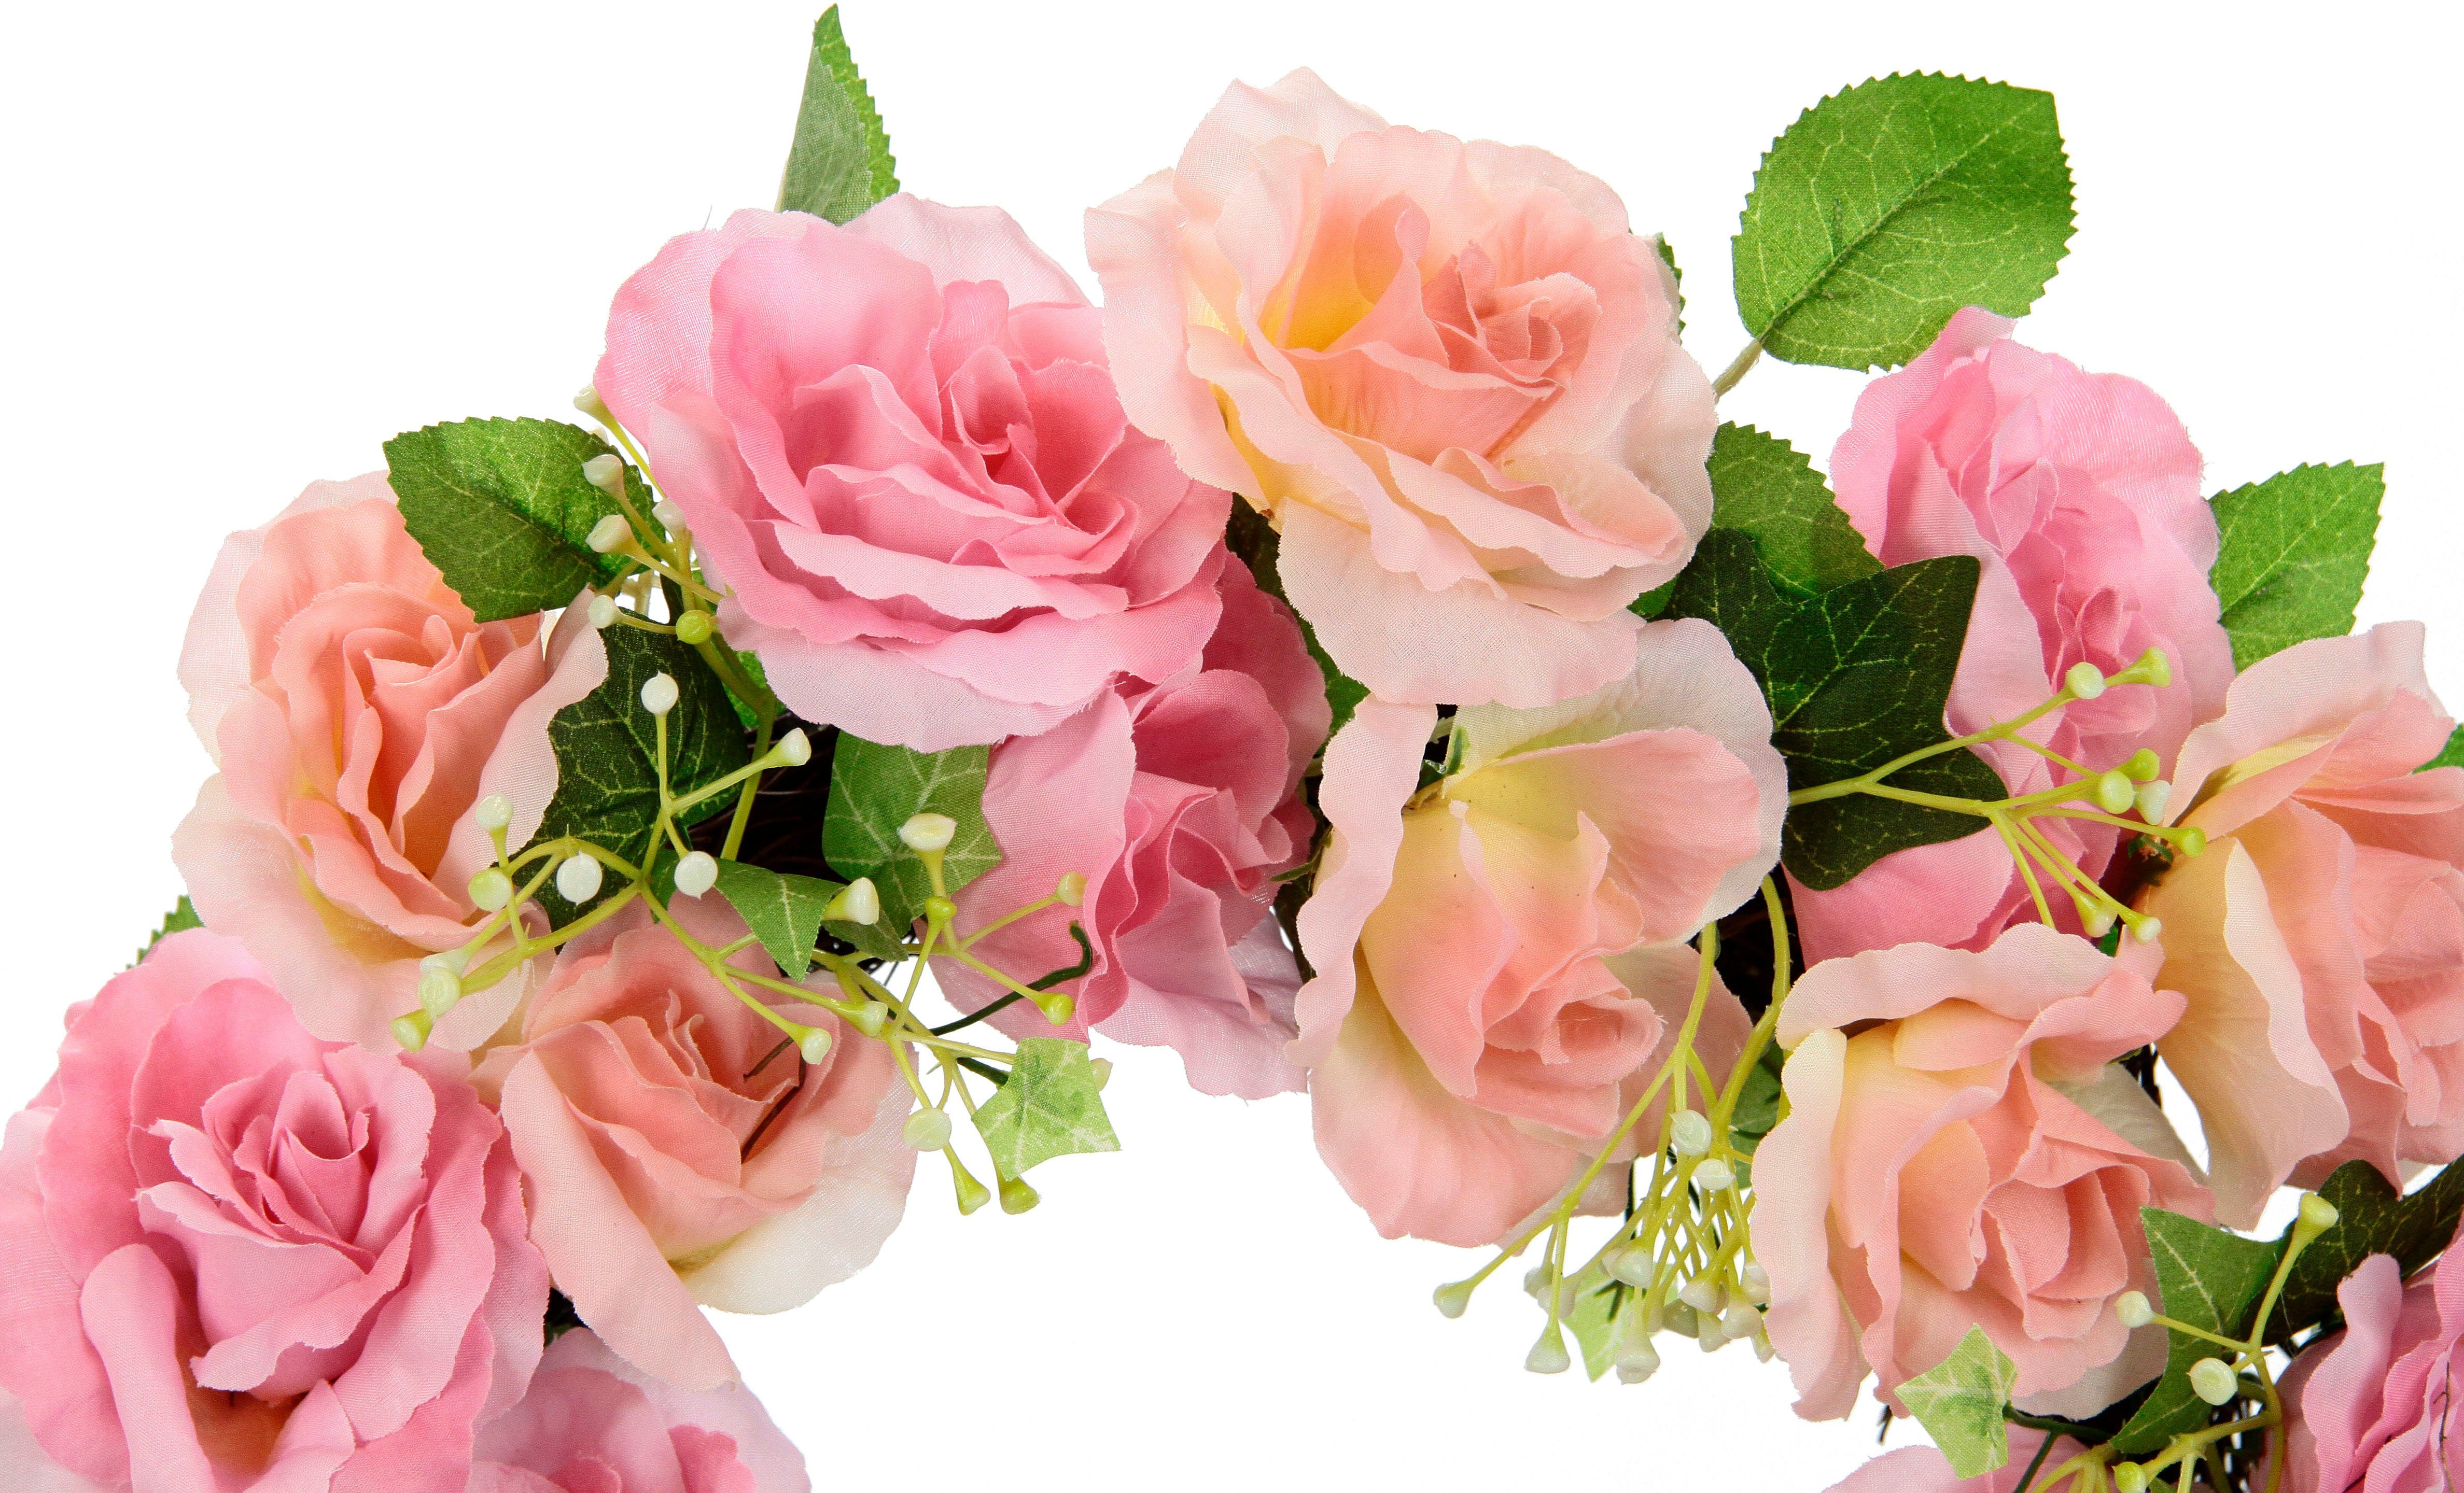 Lebendig Rose Dekoration Seidenblumen Blumen Hängedeko Blütenkranz 